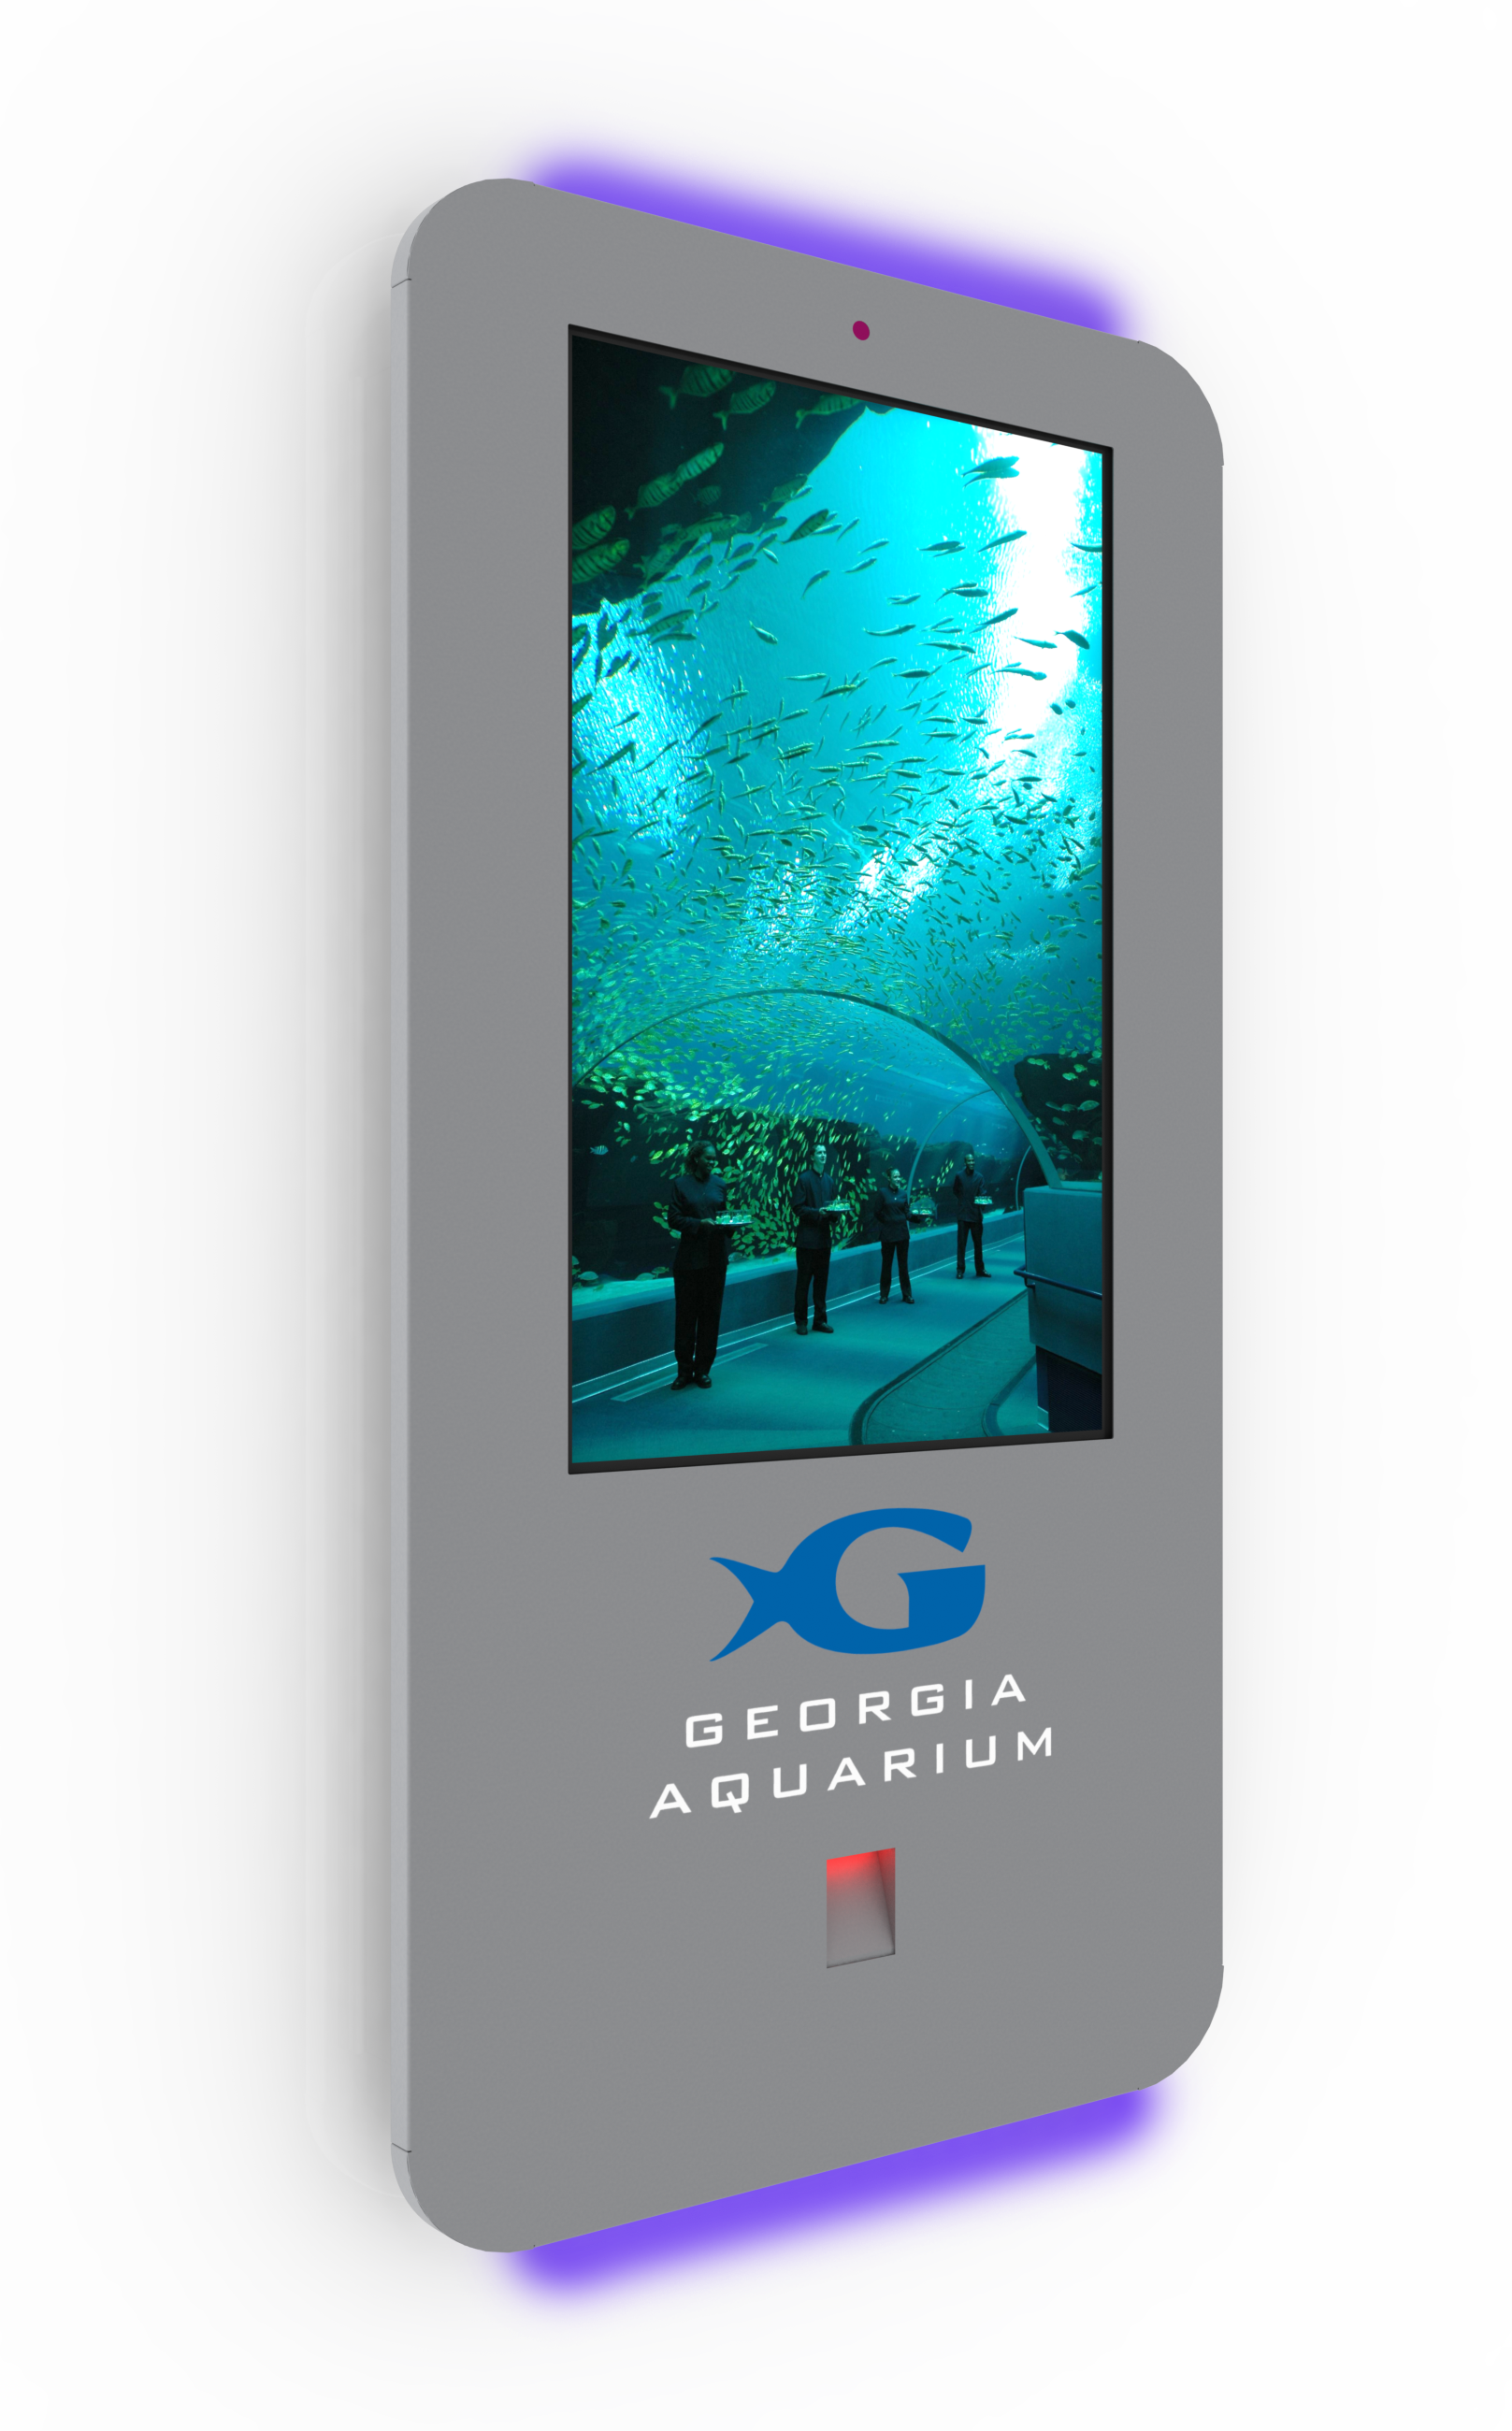 Kiosk example for Georgia Aquarium